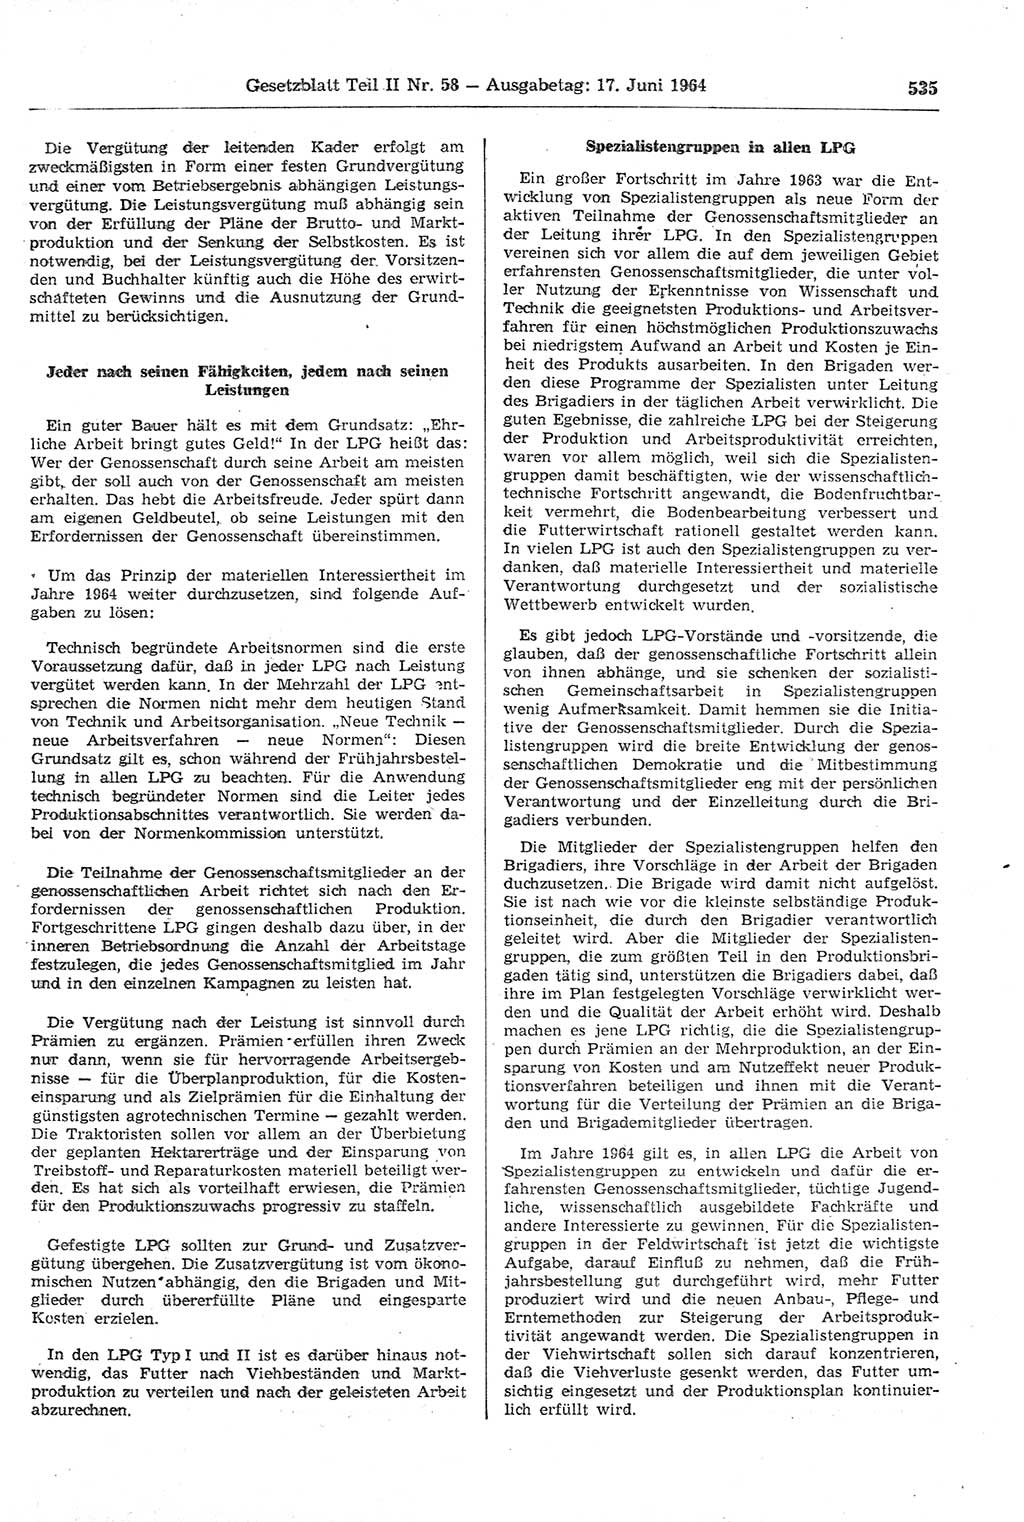 Gesetzblatt (GBl.) der Deutschen Demokratischen Republik (DDR) Teil ⅠⅠ 1964, Seite 535 (GBl. DDR ⅠⅠ 1964, S. 535)